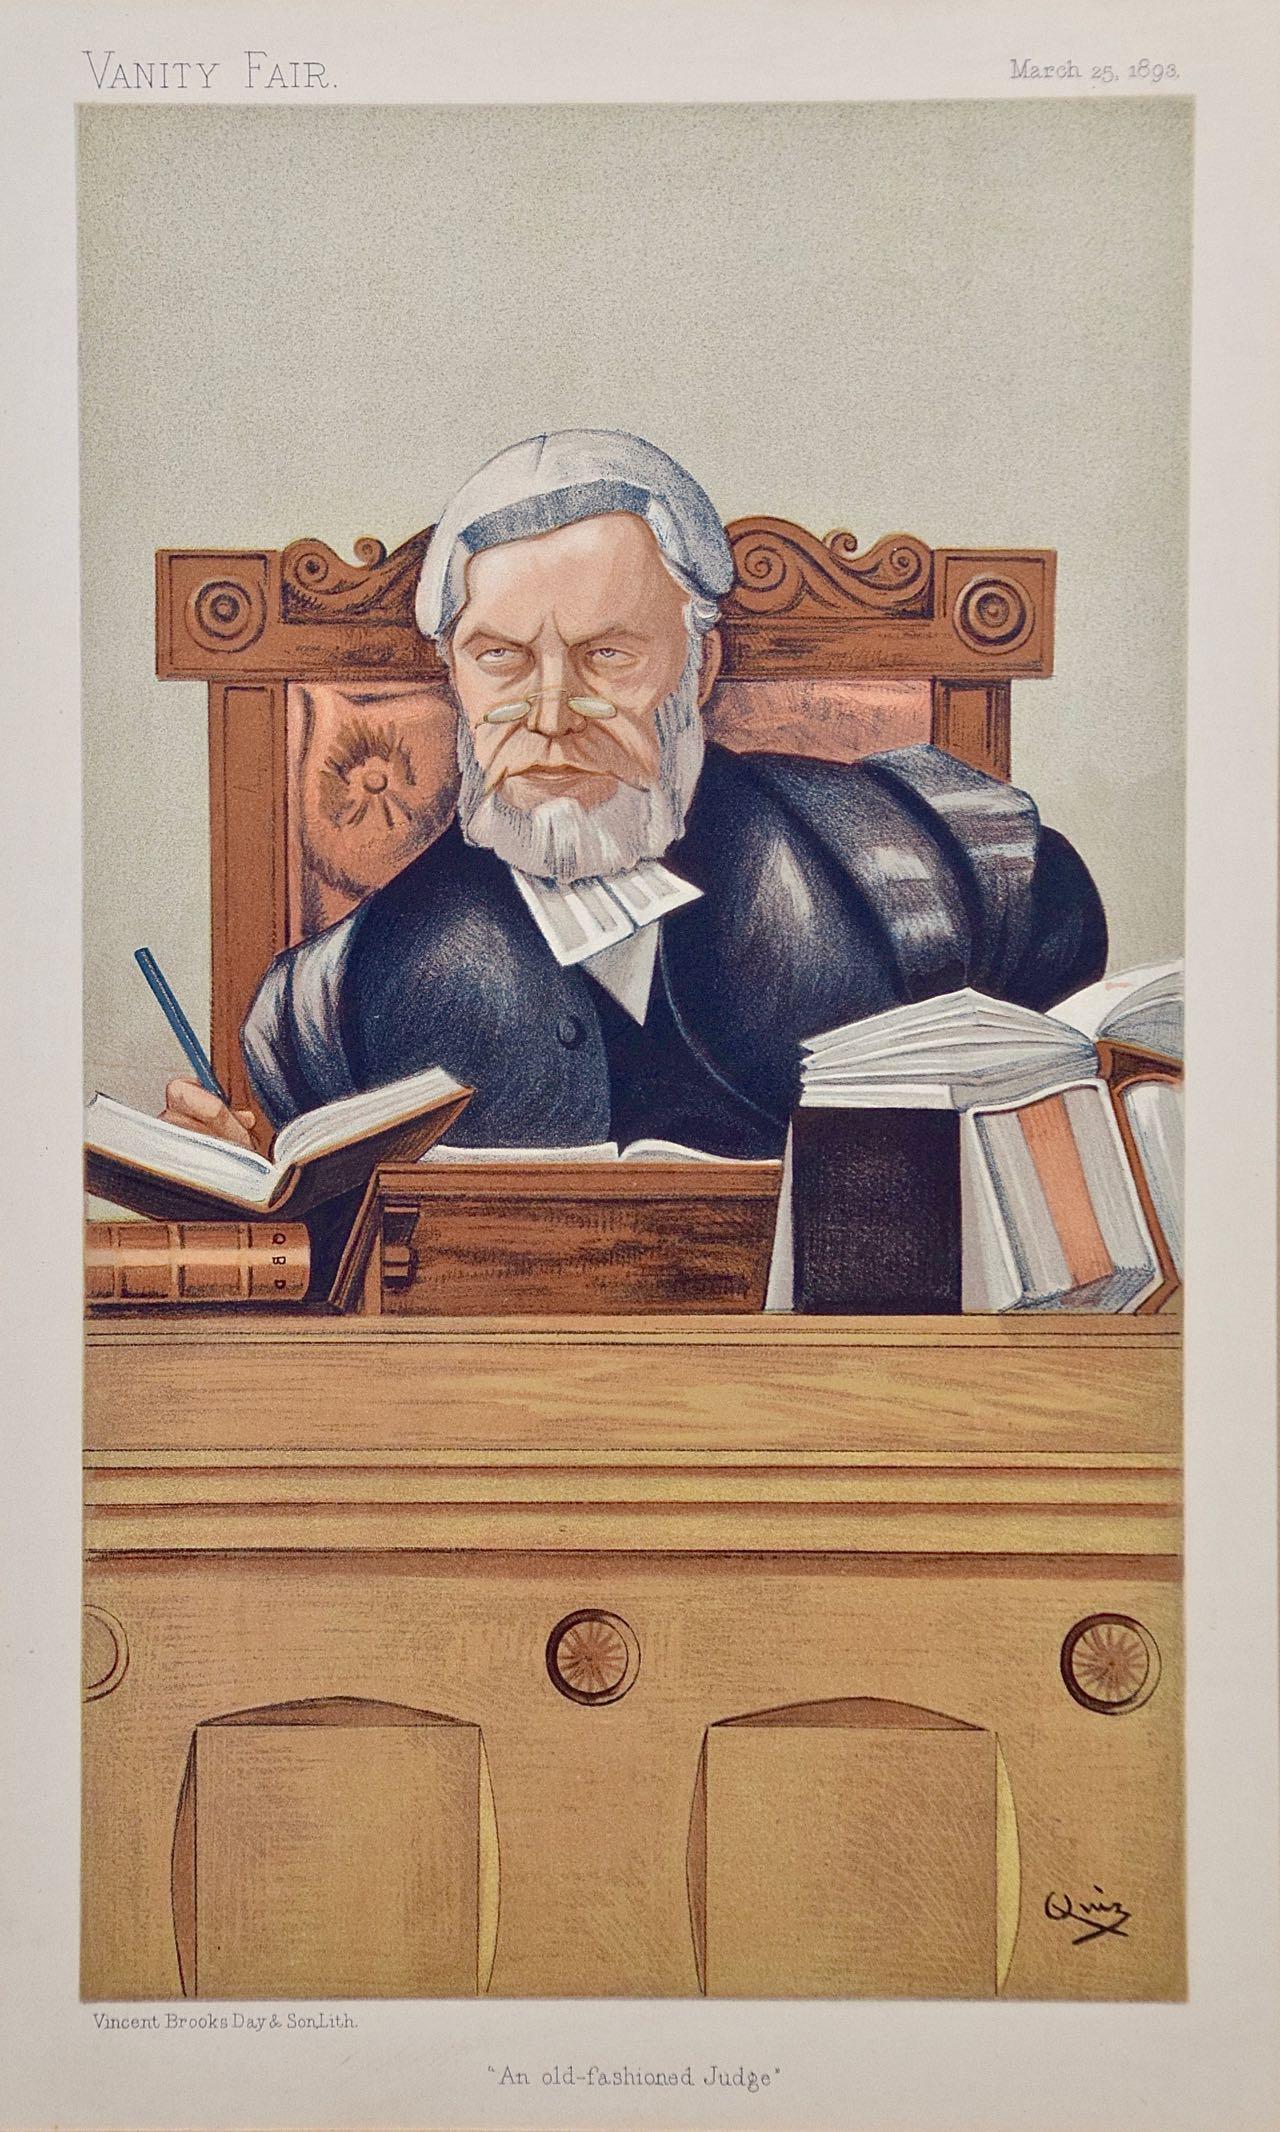 Waschtisch-Karikatur aus dem 19. Jahrhundert, „Ein alter, modischer Richter“, Henry Lopes – Print von Sir Leslie Ward